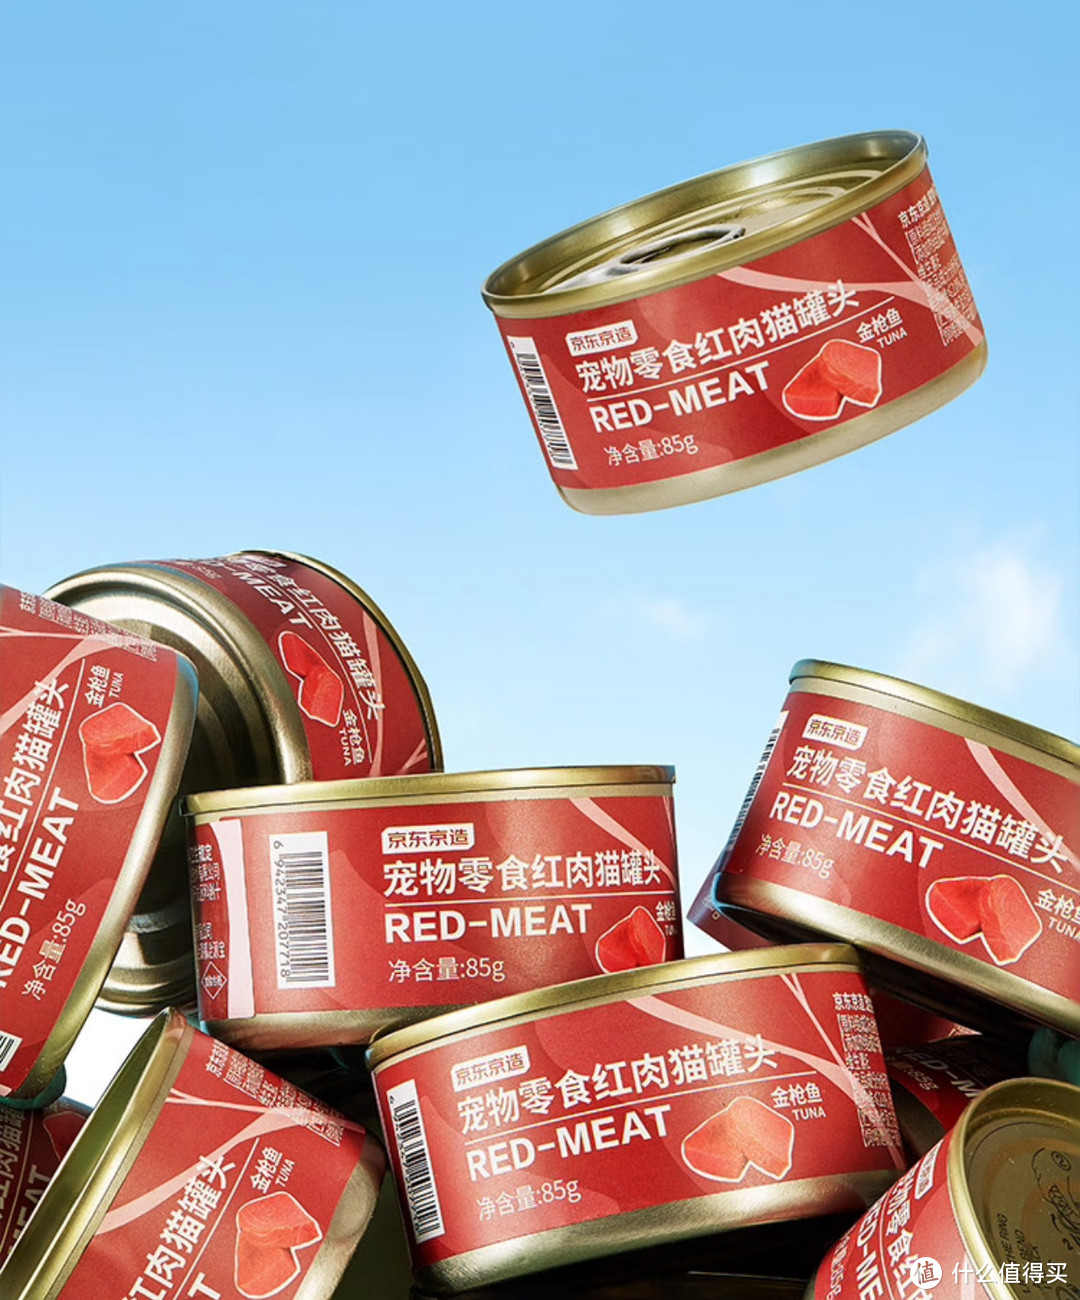 京东京造浓汤红肉宠物罐头新品上市，金枪鱼口味更好吃。